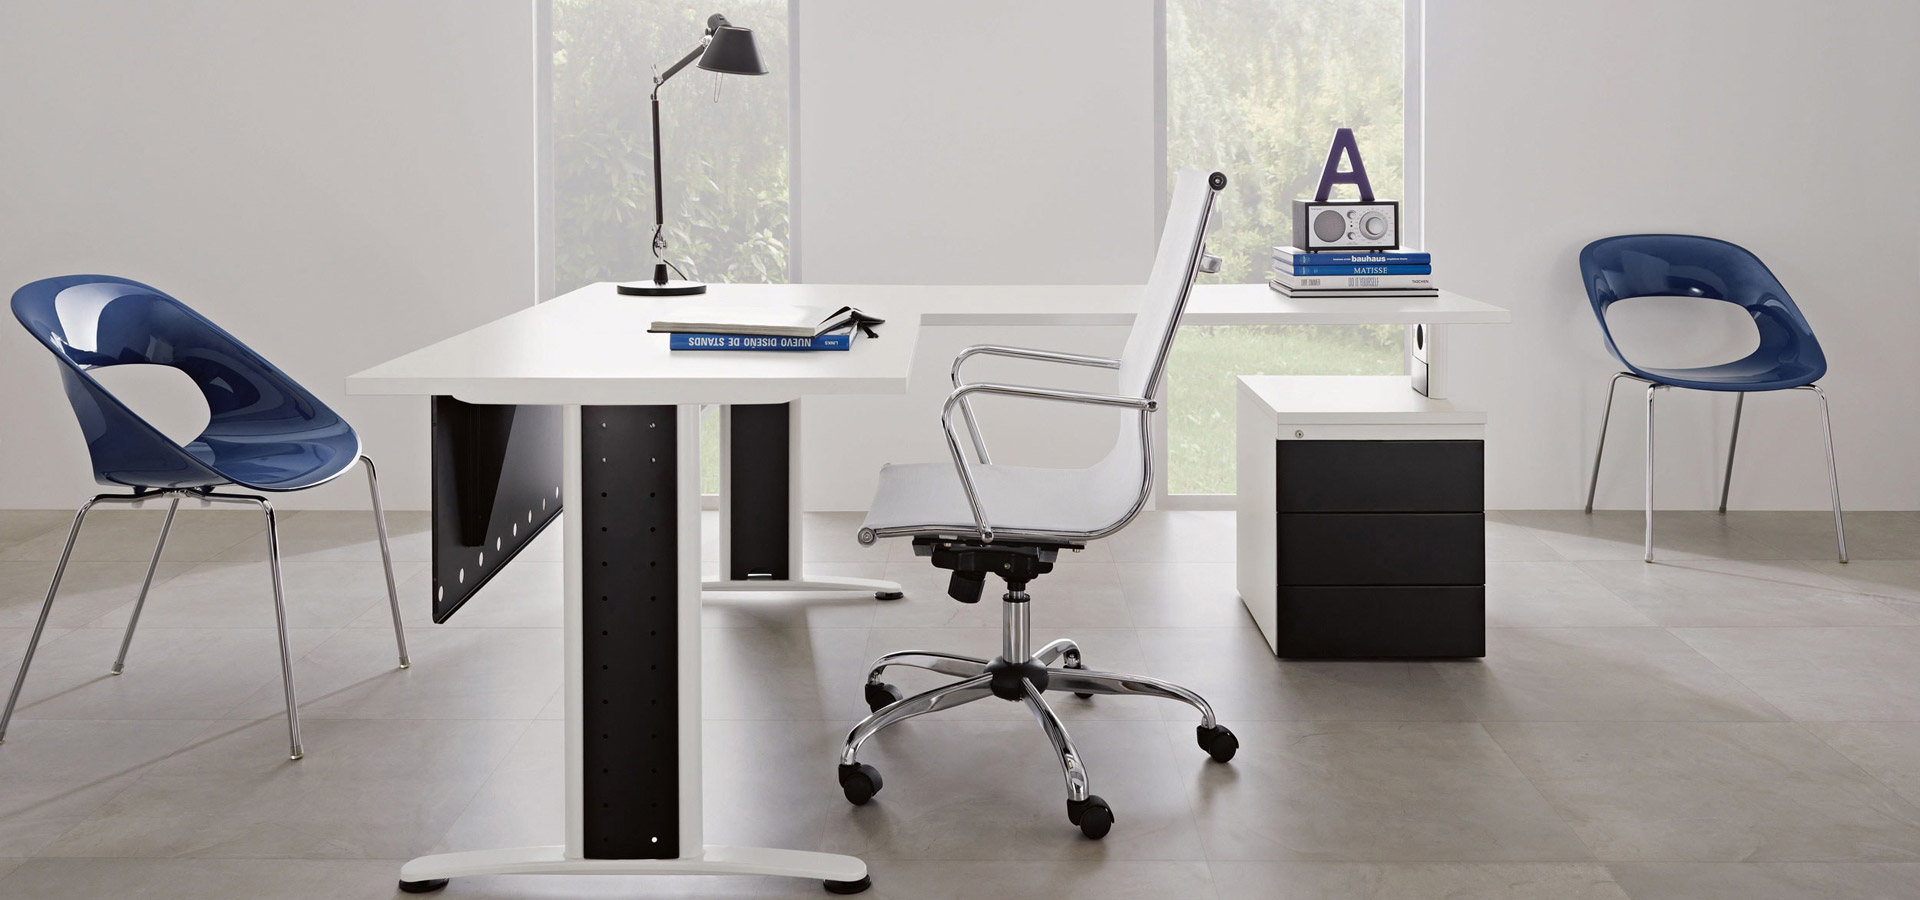 Línea de productos para muebles de oficina Better